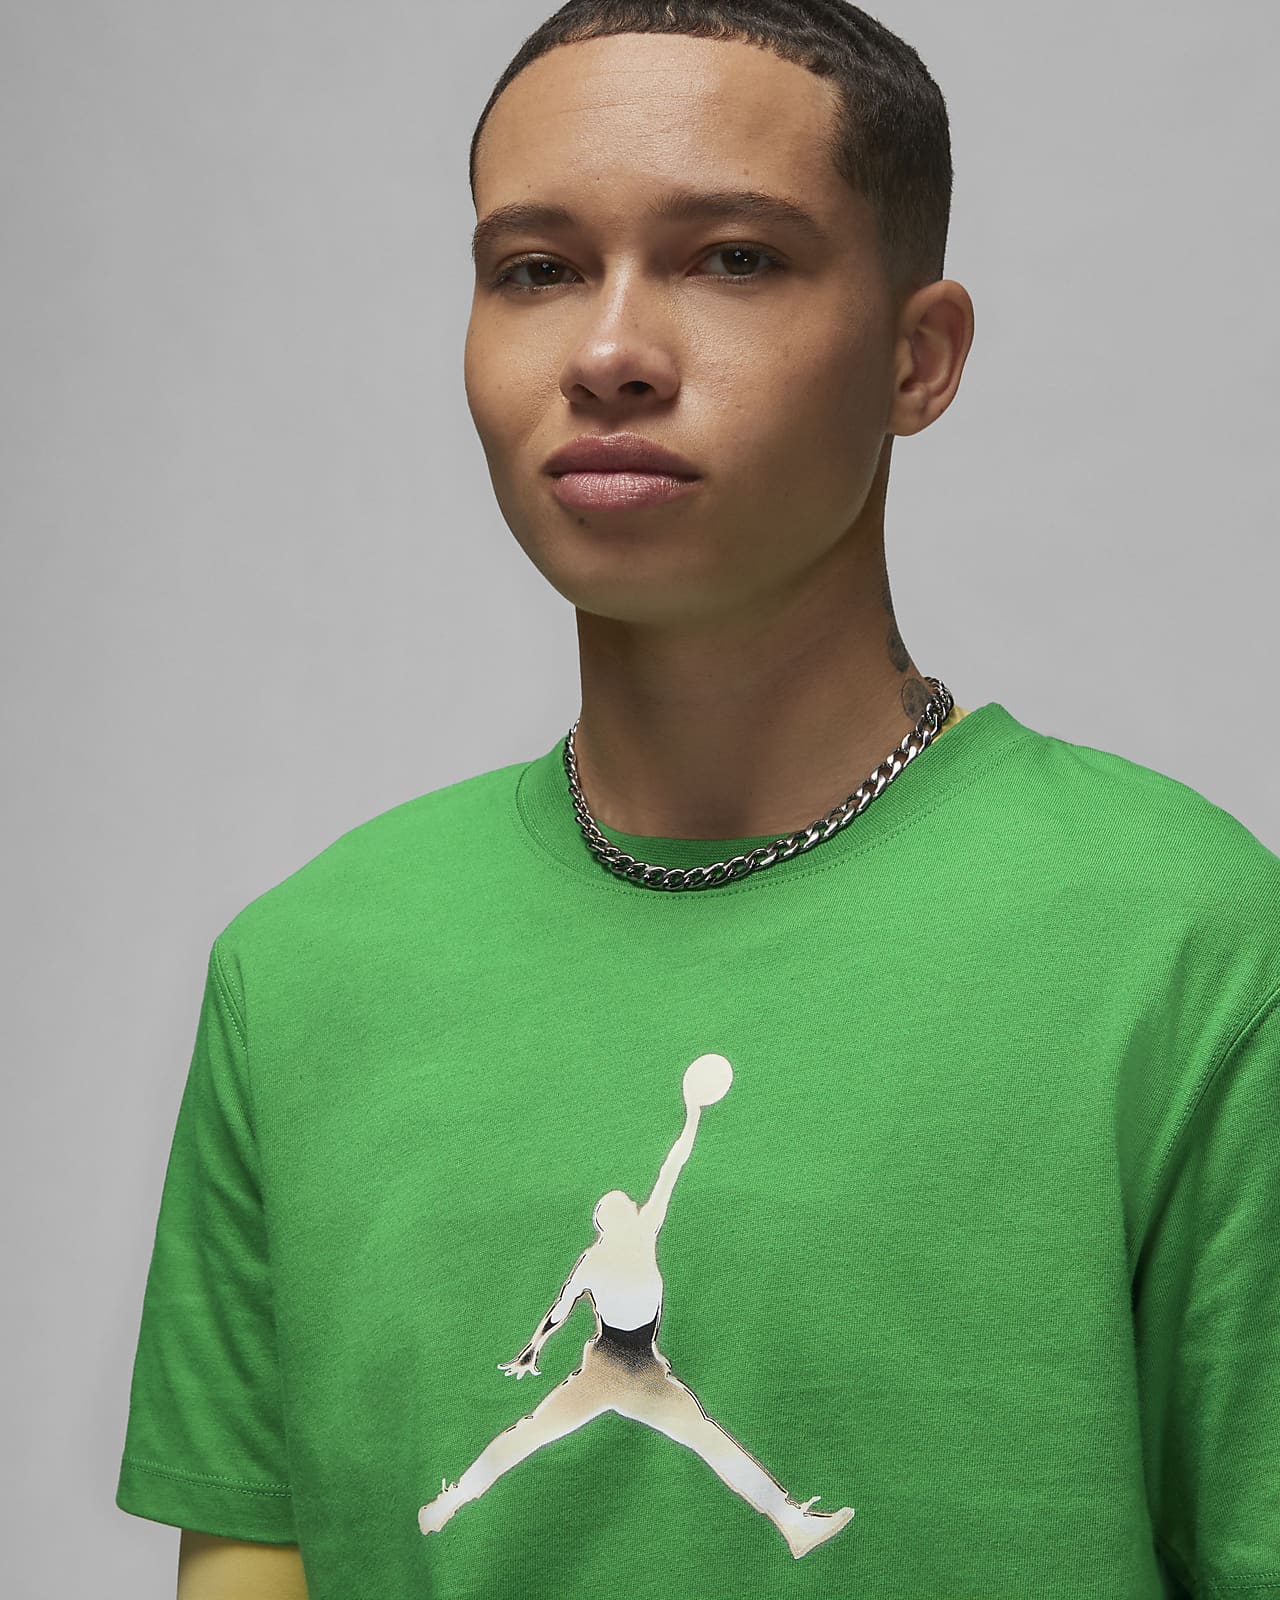 Jordan Men's Graphic T-Shirt. Nike LU